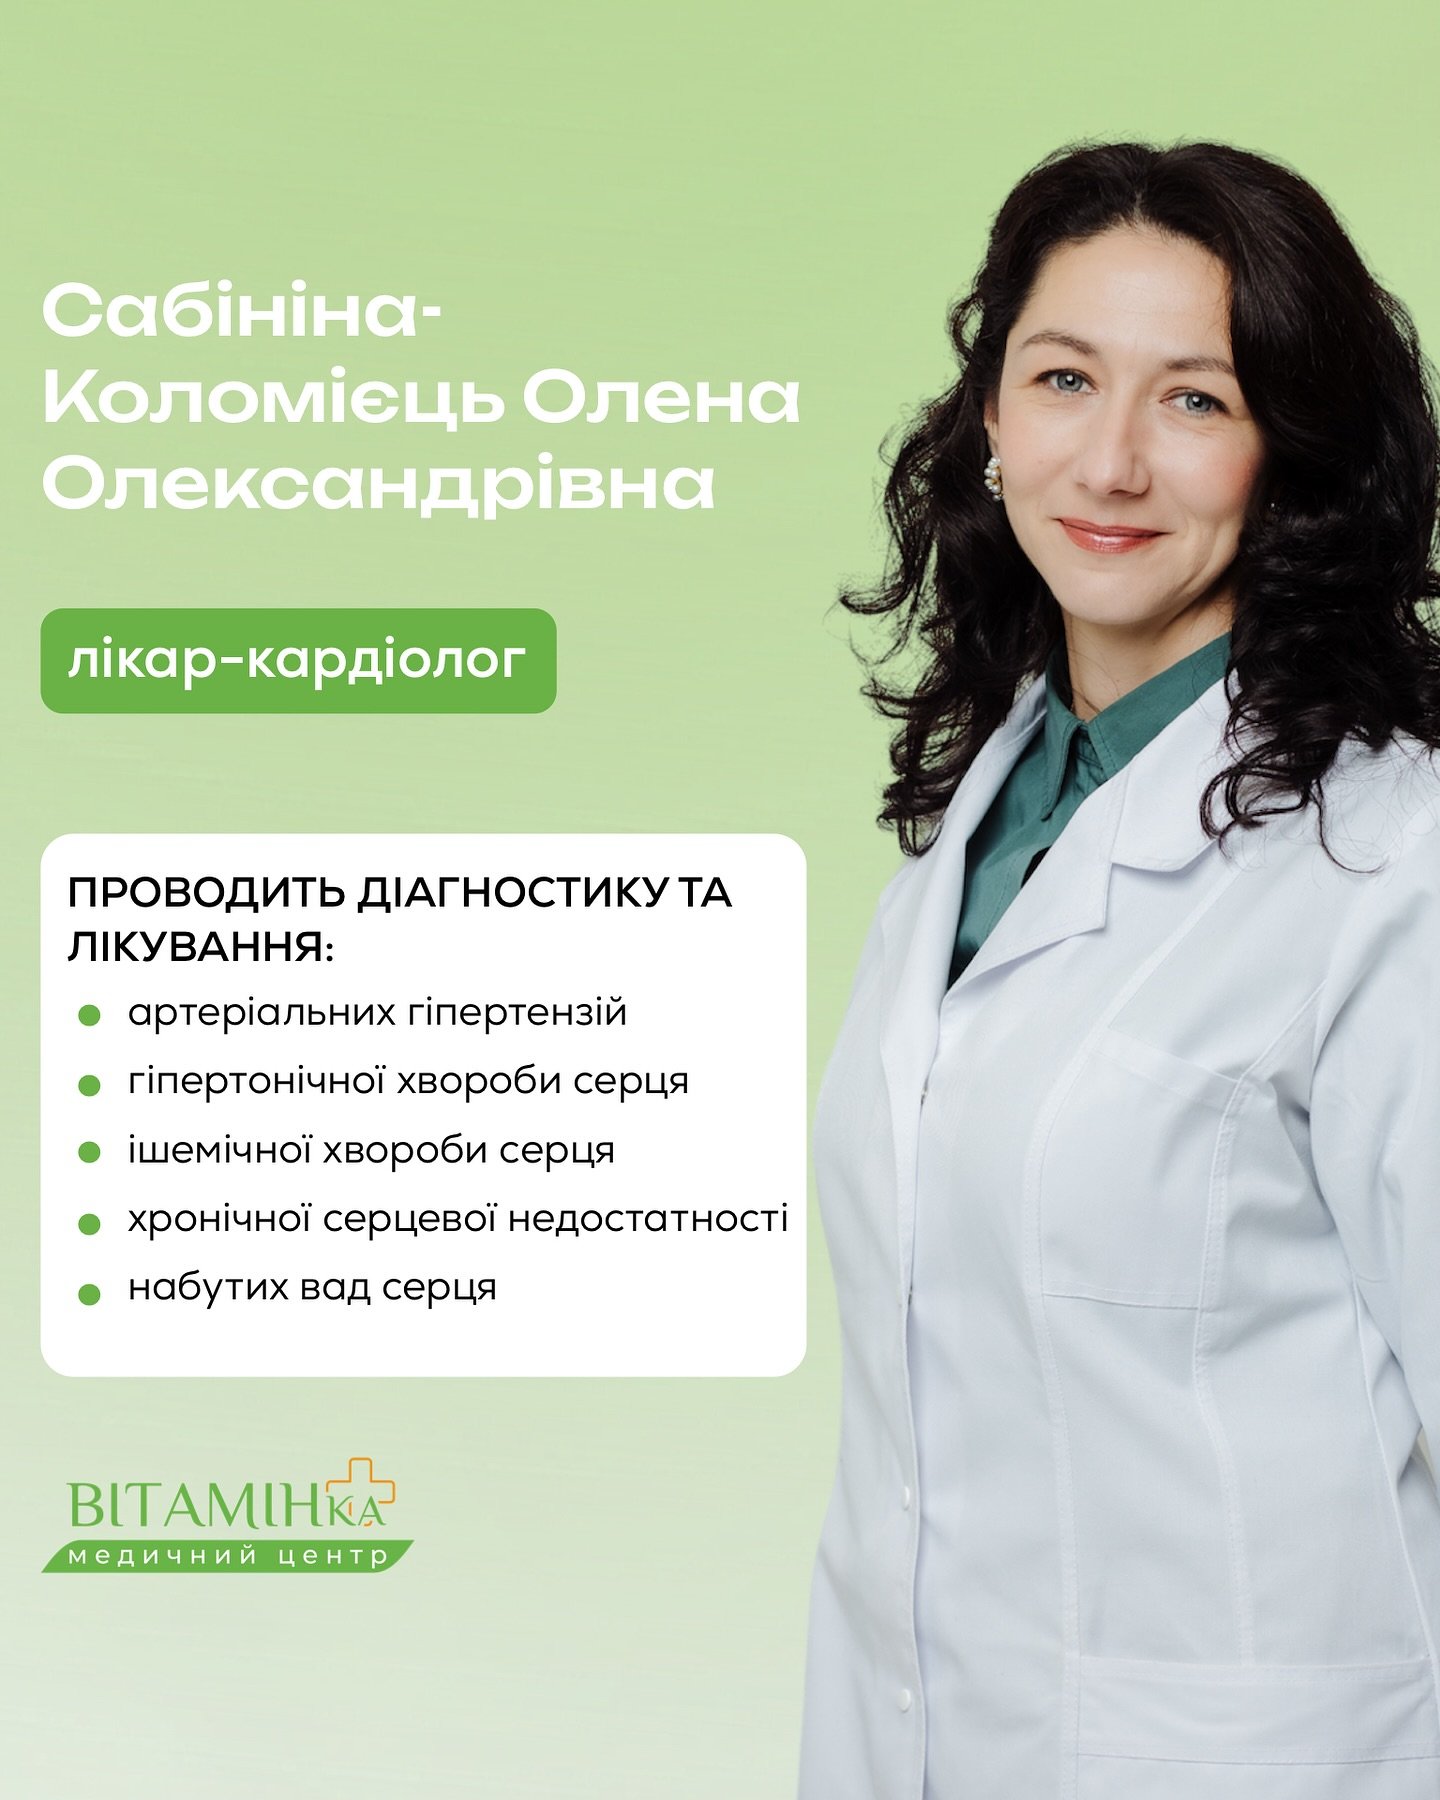 Кардіолог — це лікар, який піклується про один із головних органів вашого організму! - Медичний центр Вітамін